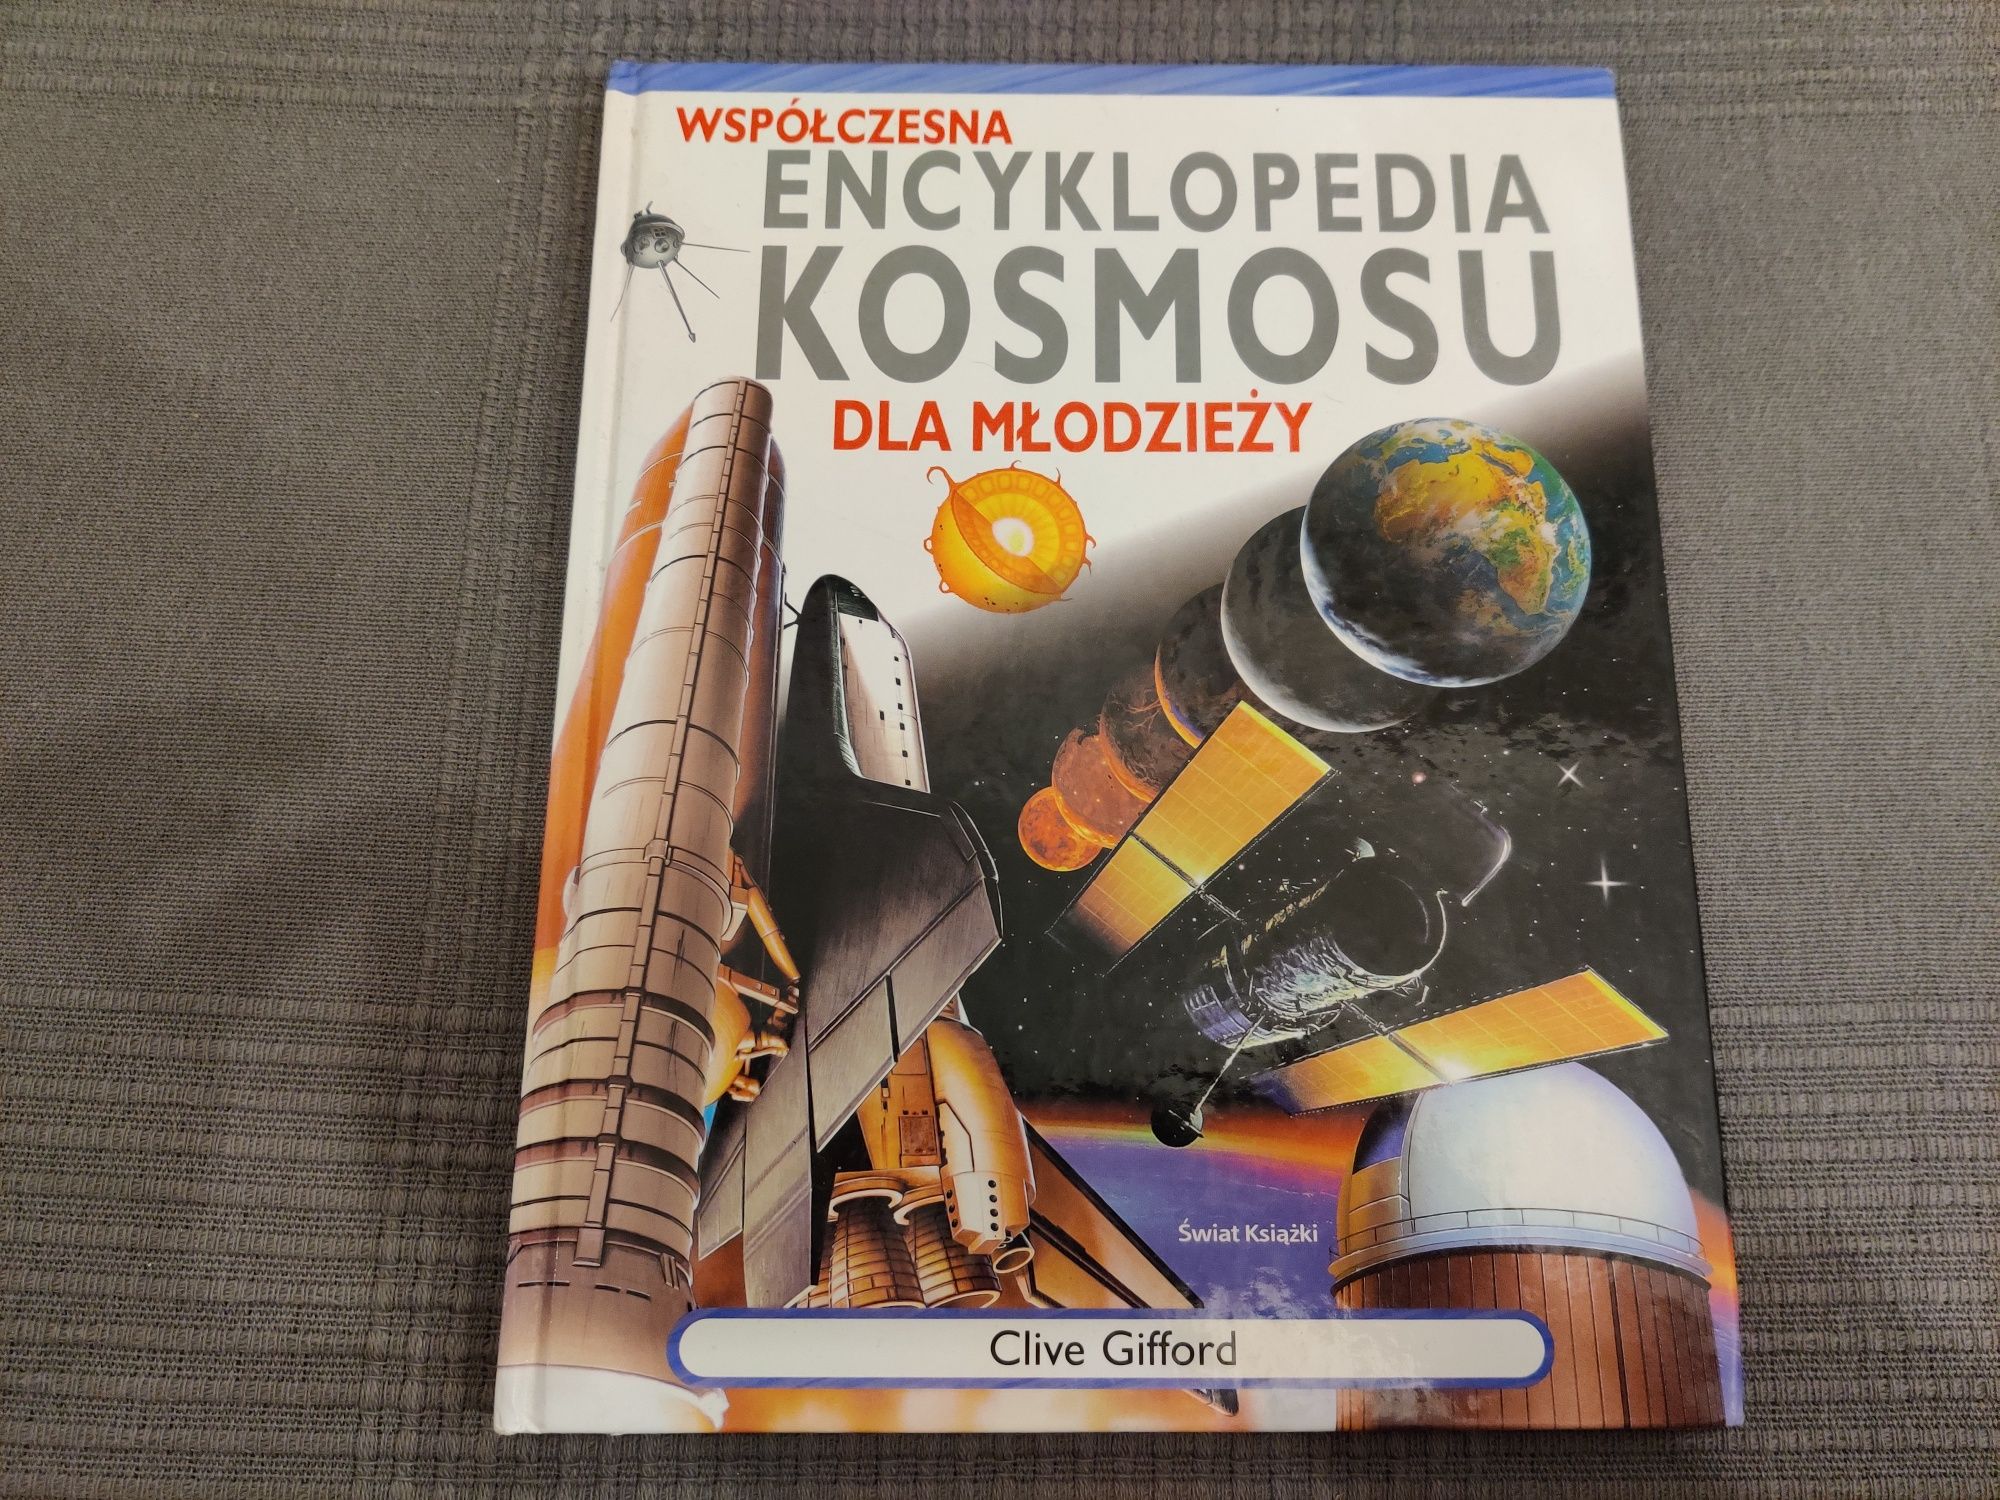 Współczesna encyklopedia kosmosu dla młodzieży Clive Gifford